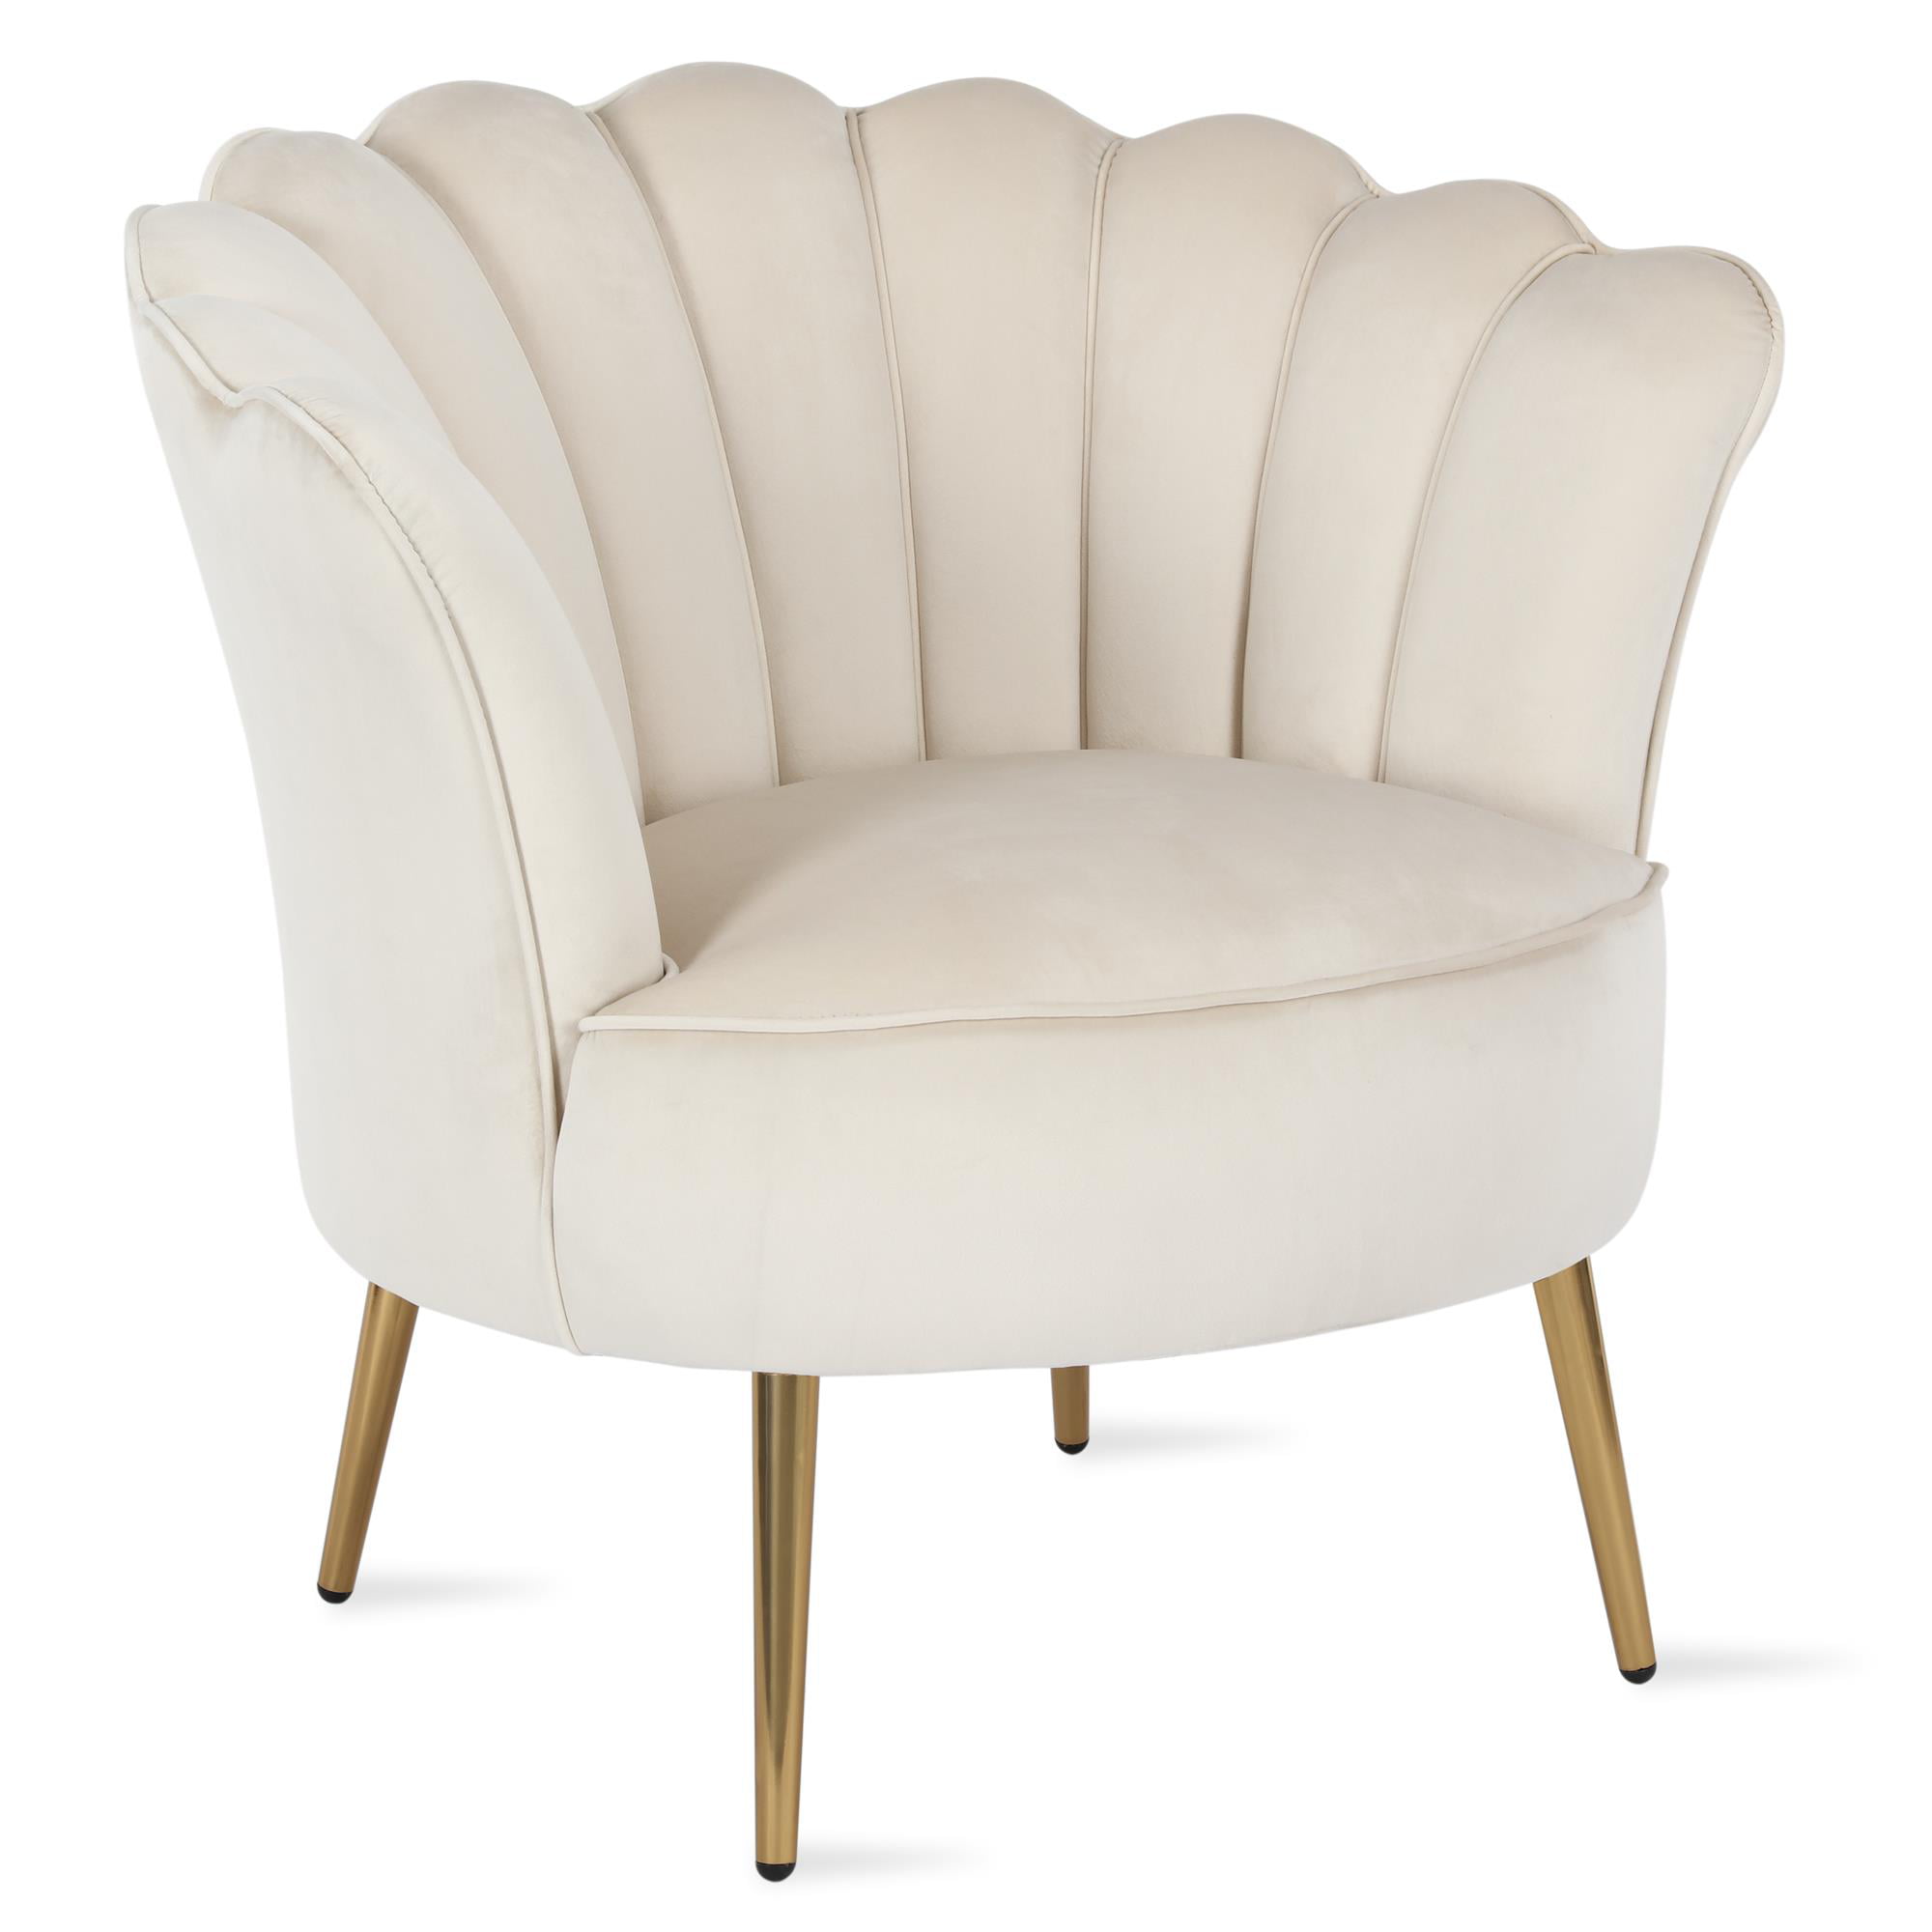 Novogratz Presley Modern Glam Seashell Accent Chair, Cream Velvet